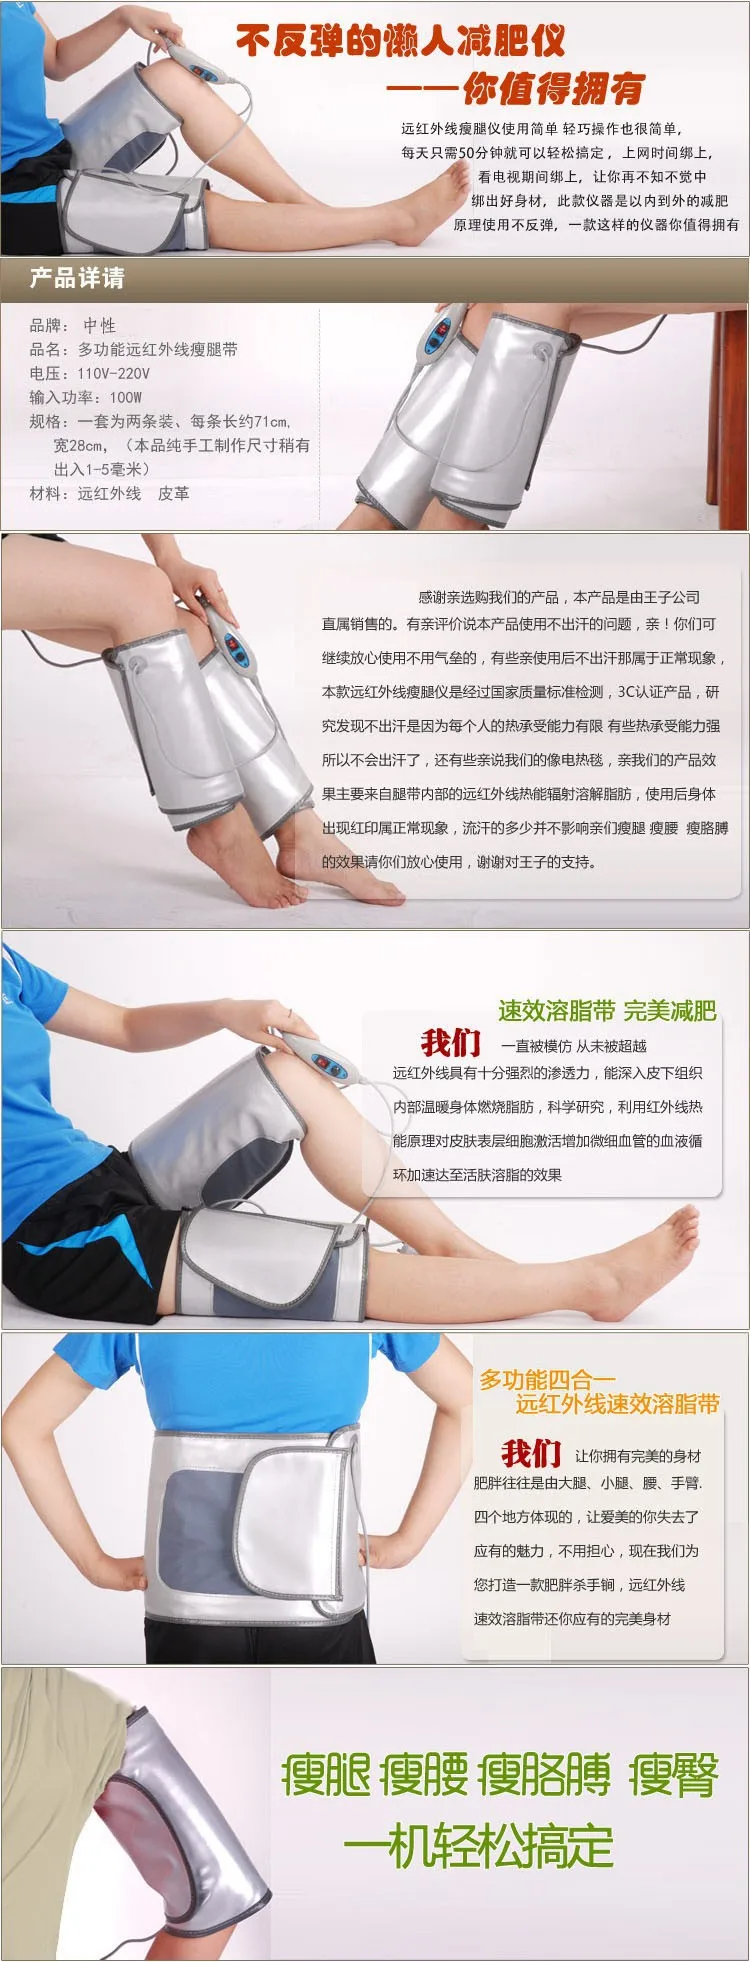 Прибор для массажа ног инфракрасный нагревательный пояс для ног и рук для похудения сауна дымоход 110-240 в ЕС Великобритания США вилка